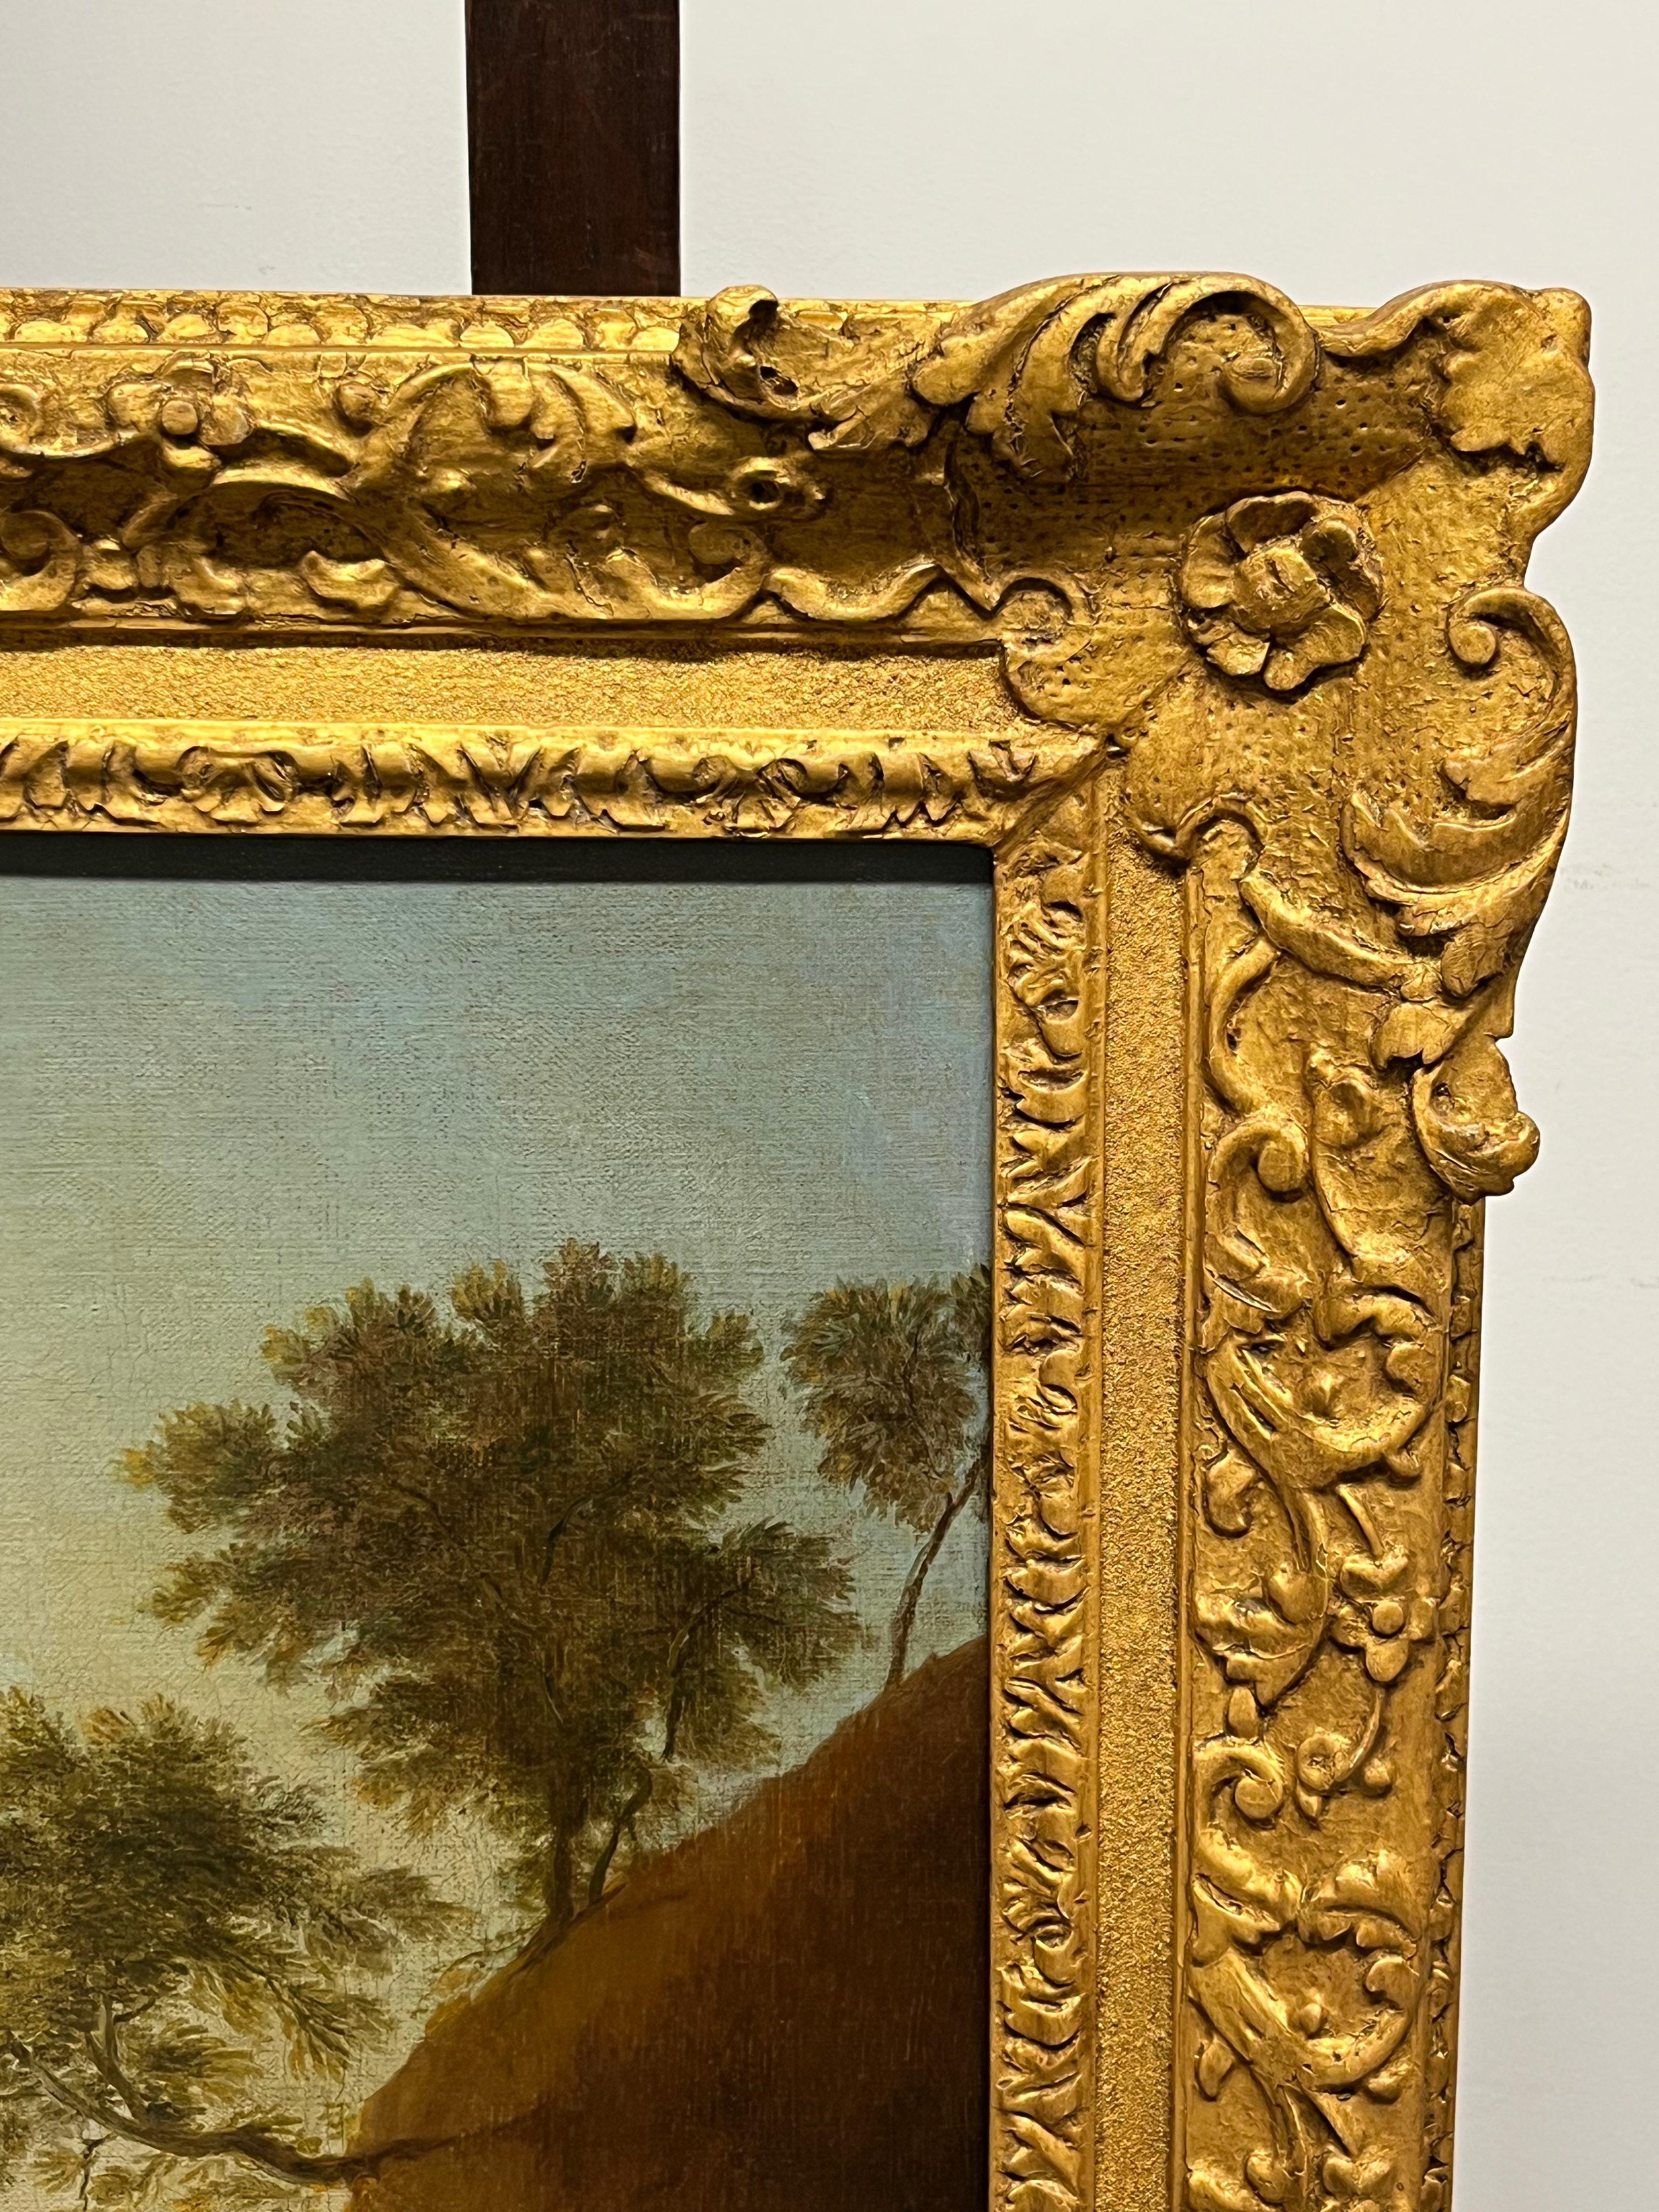 Adriaen van Diest (1655-1704)
Paire de paysages classiques
Deux huiles sur toile
Taille de la toile - 24 1/2 x 30 in
Taille de l'encadrement - 32 x 37 in

Provenance
La collection du Rt. Hon. Le comte de Castle Stewart M.C., de Stuart Hall.

Adriaen